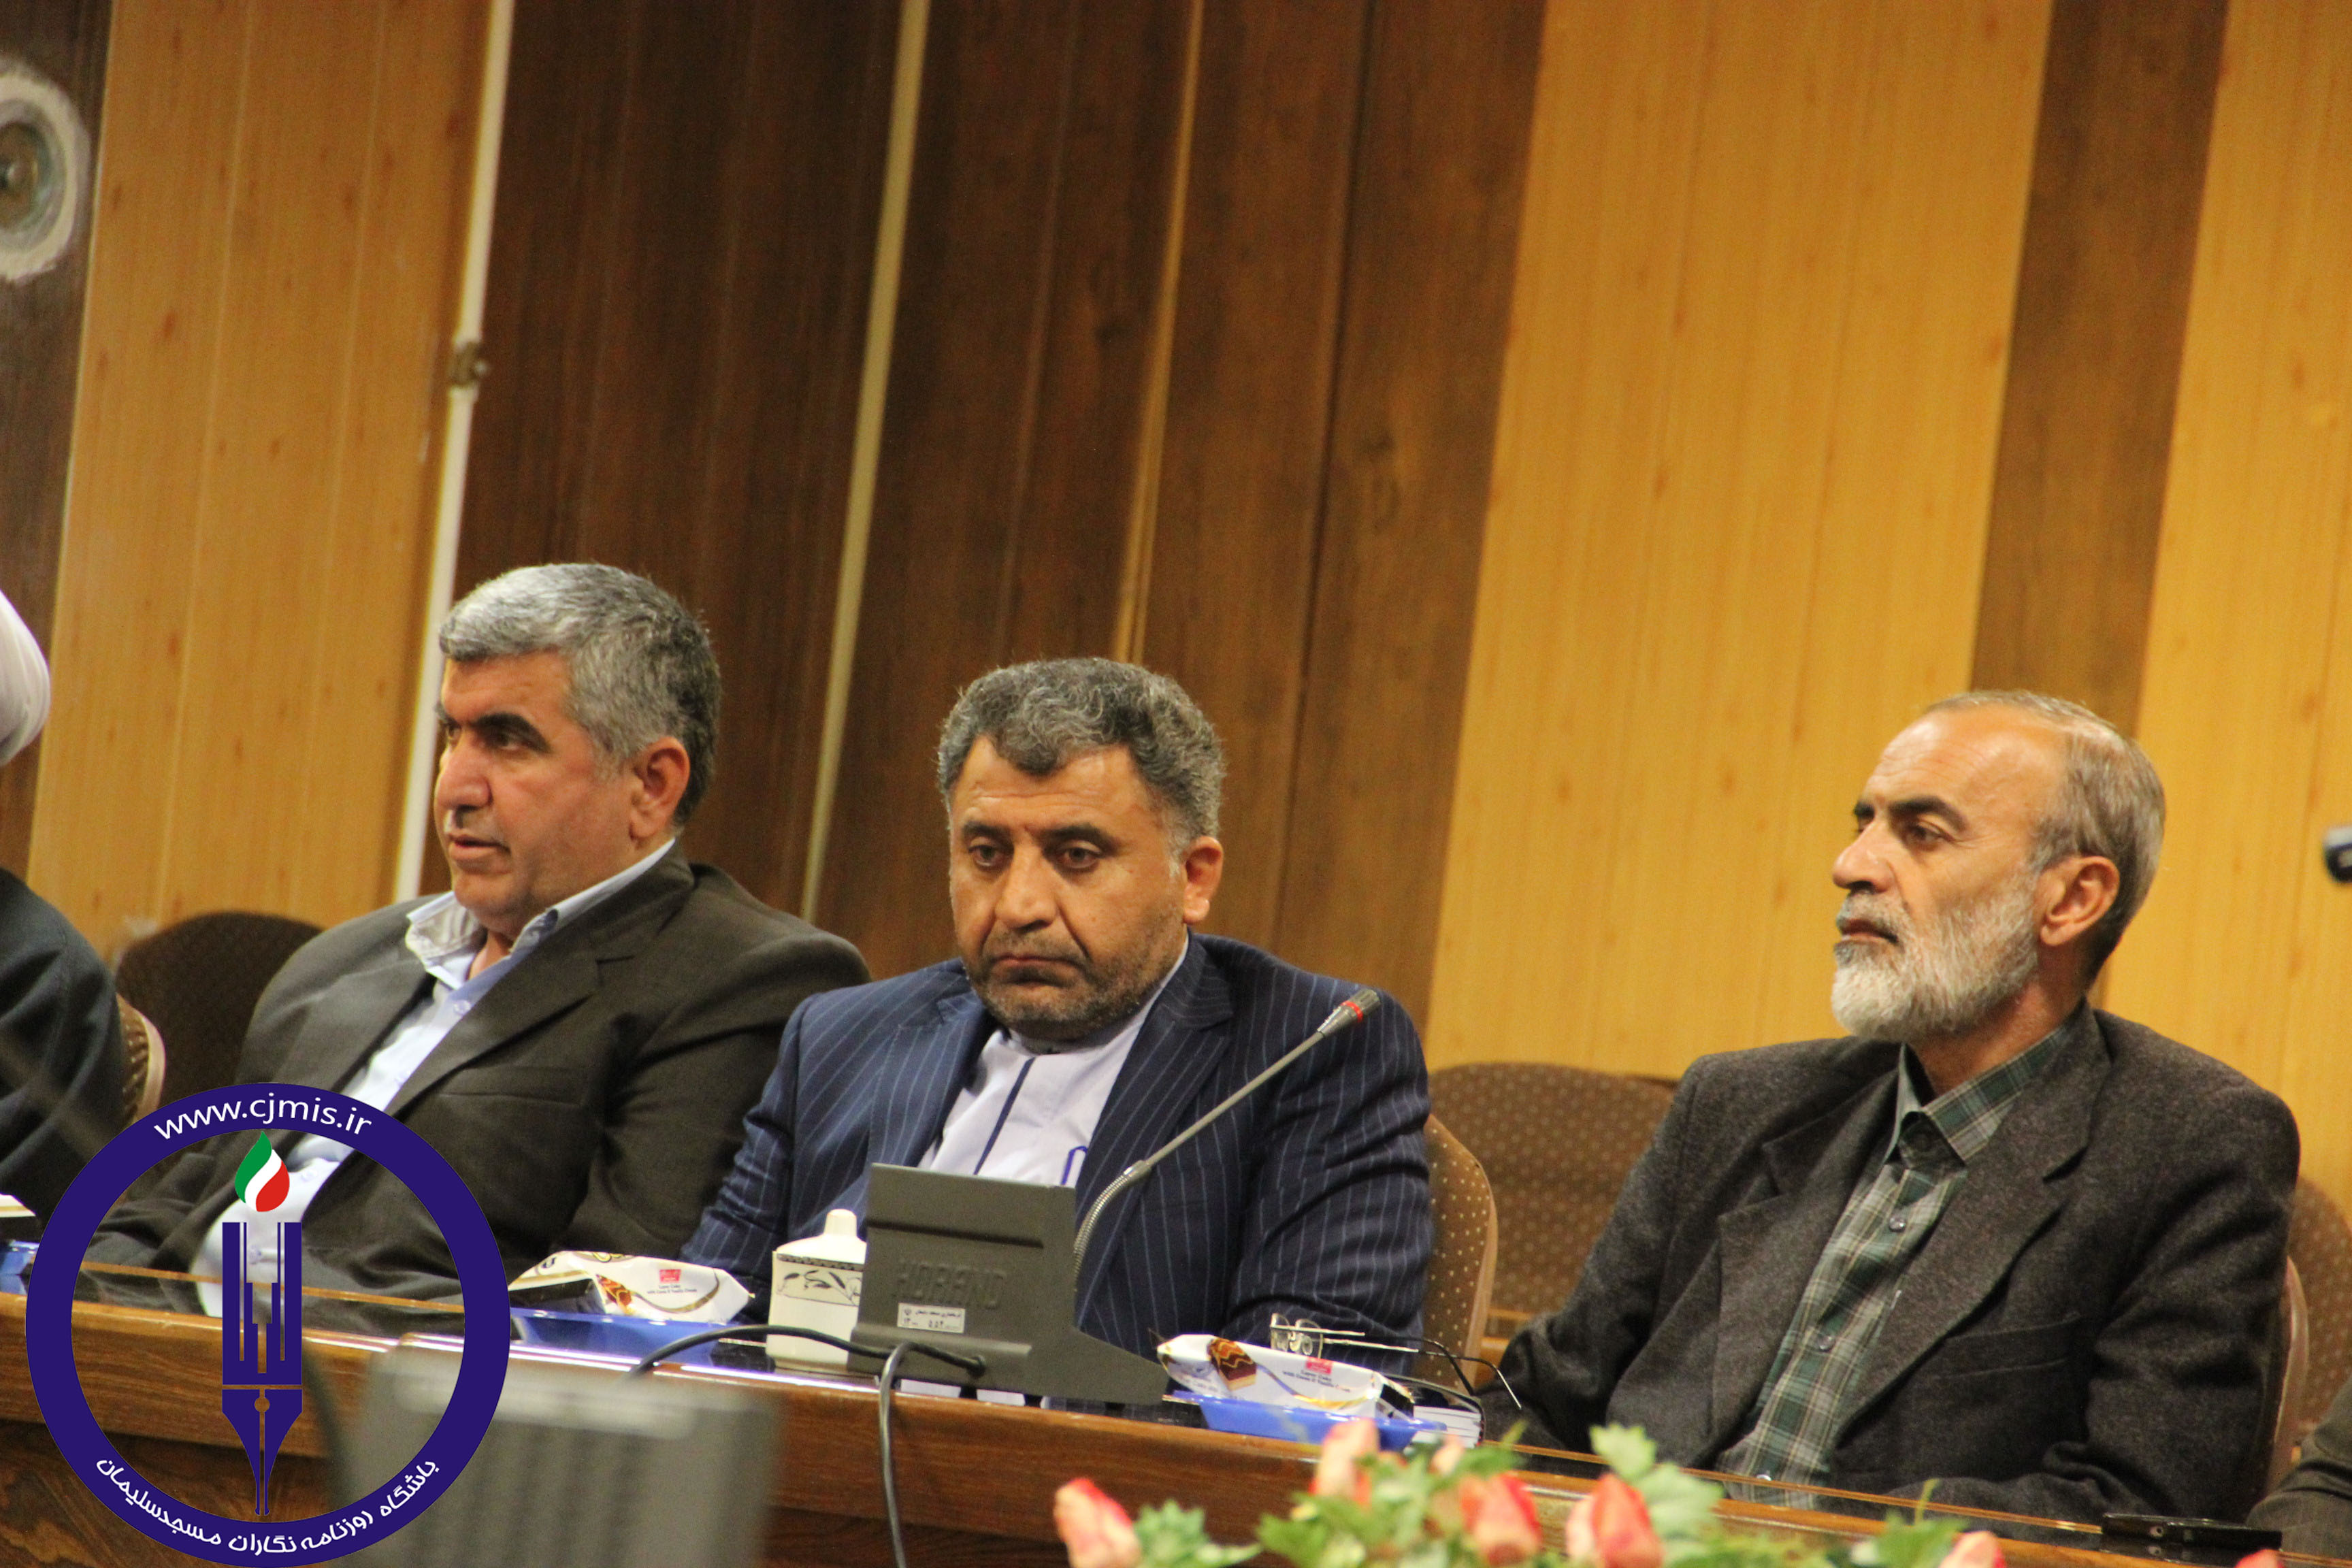 جلسه توجیهی نامزدها انتخابات مسجدسلیمان با حضور خبرنگاران برگزار شد / + تصاویر